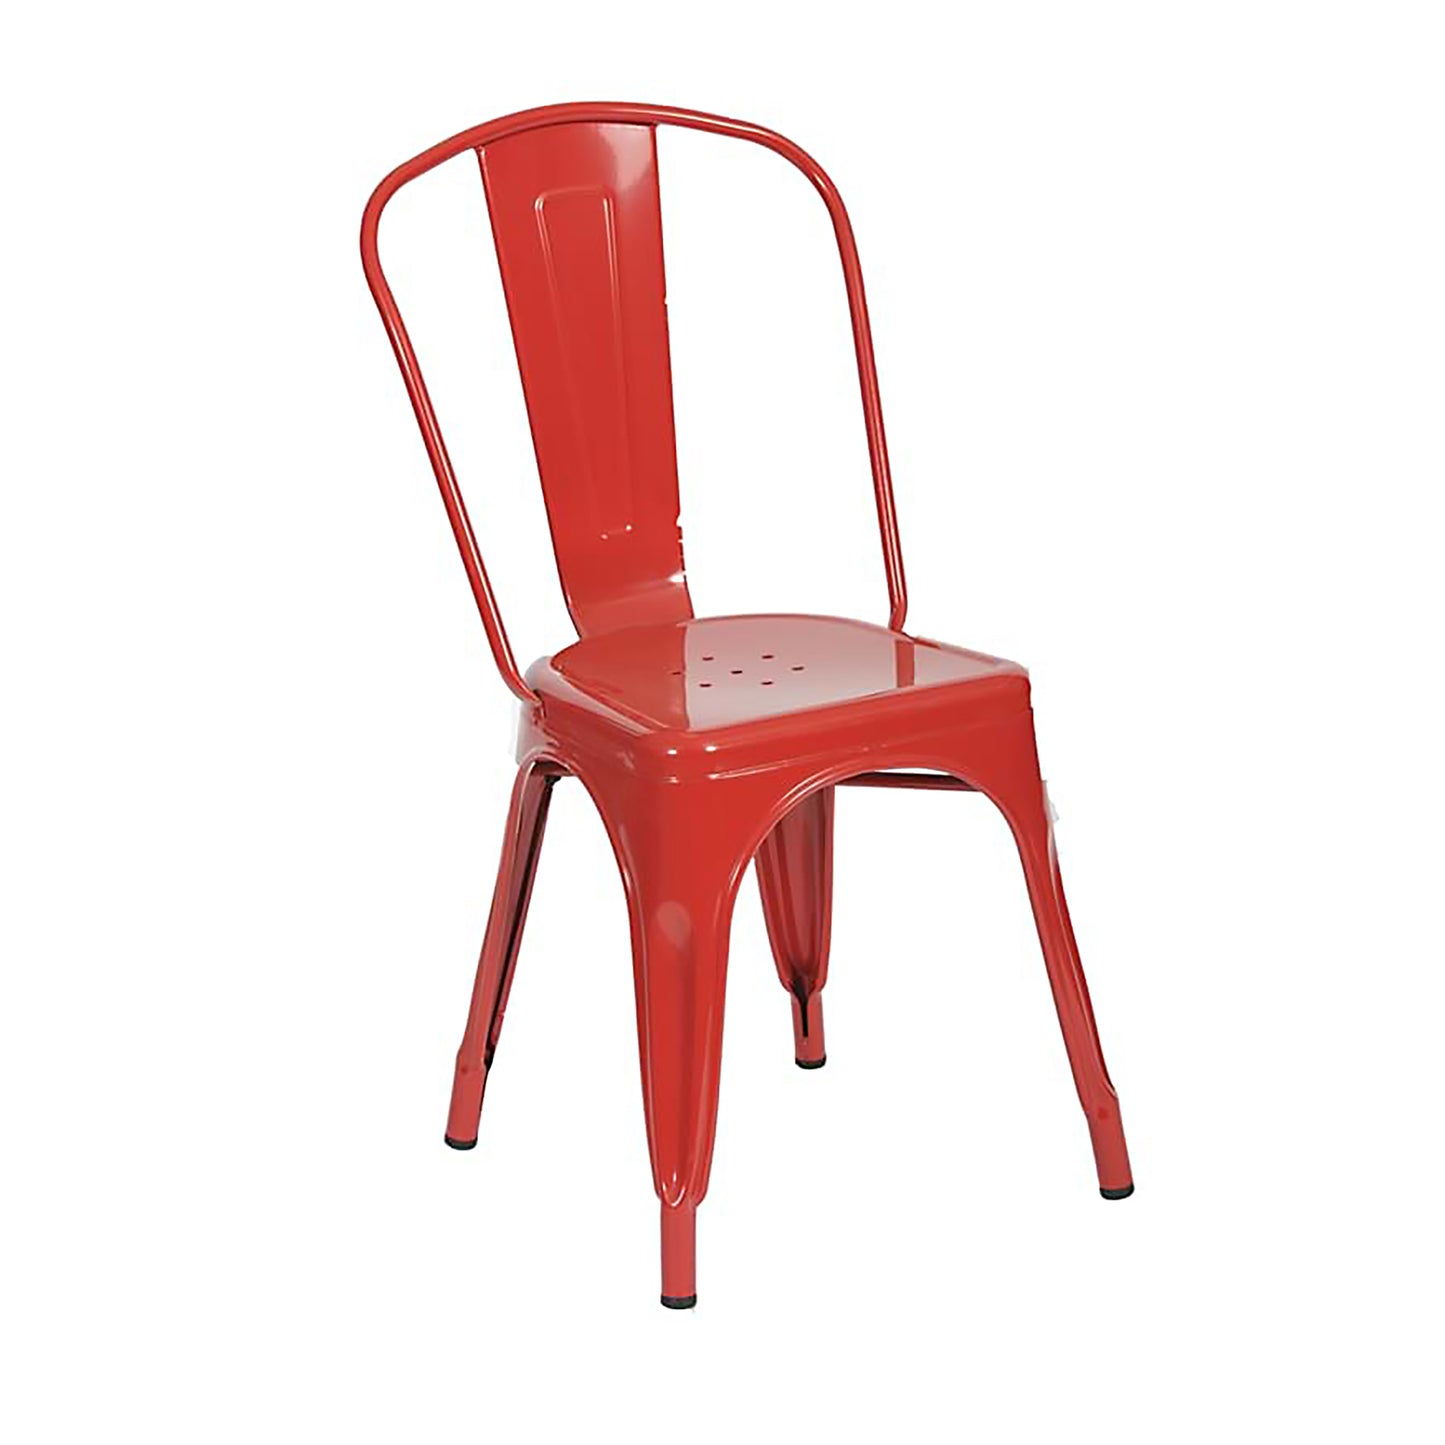 4. Bella Chair